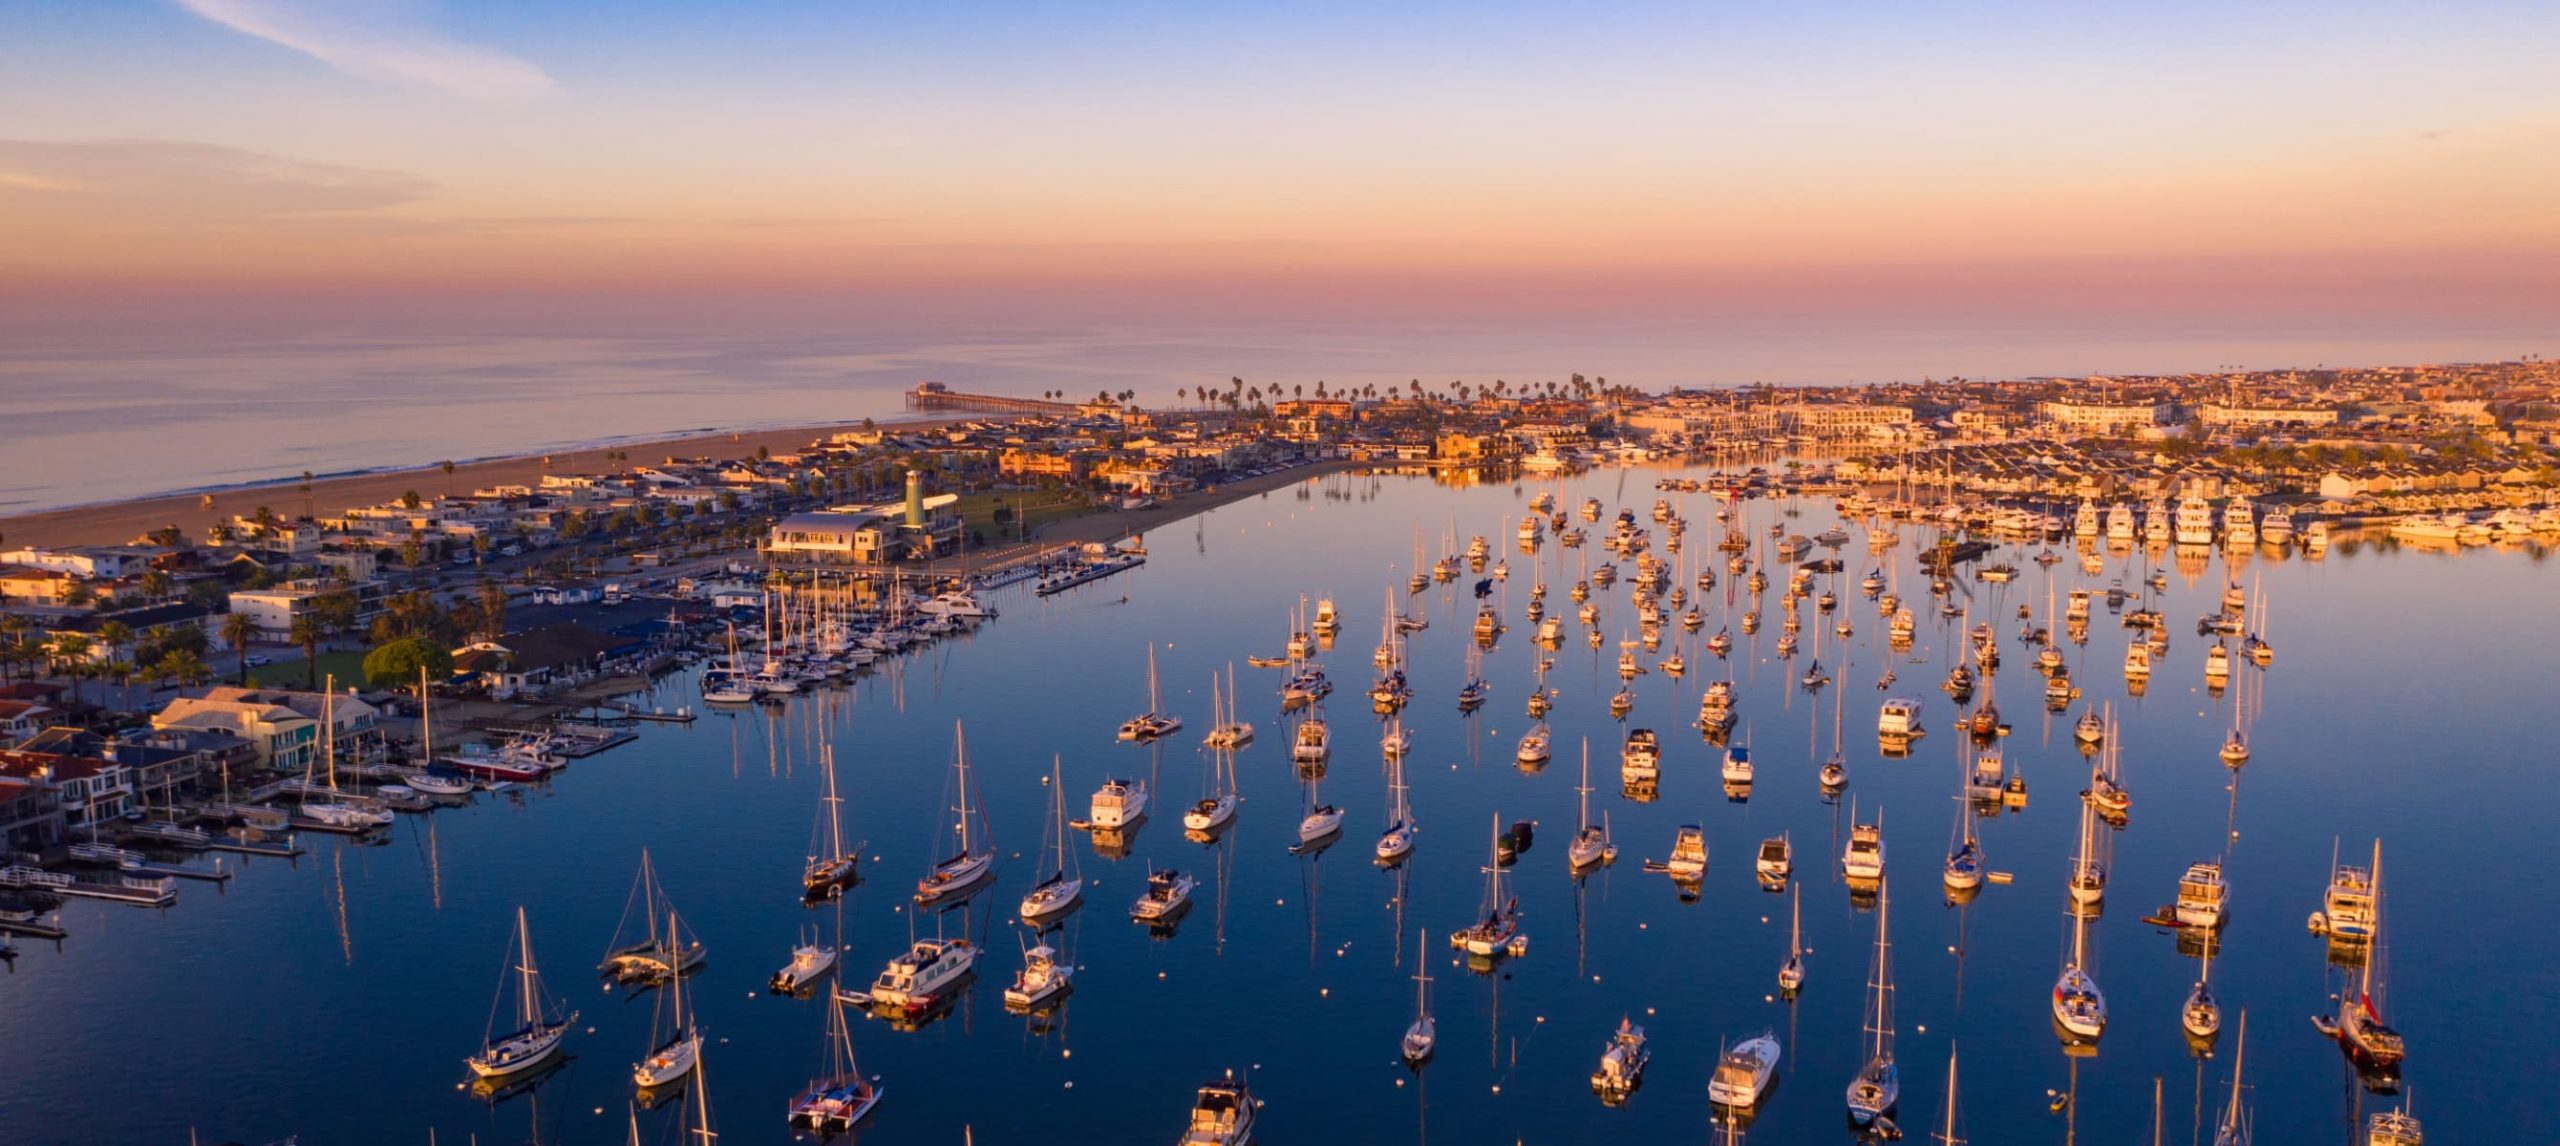 The Best Newport Beach Hotels